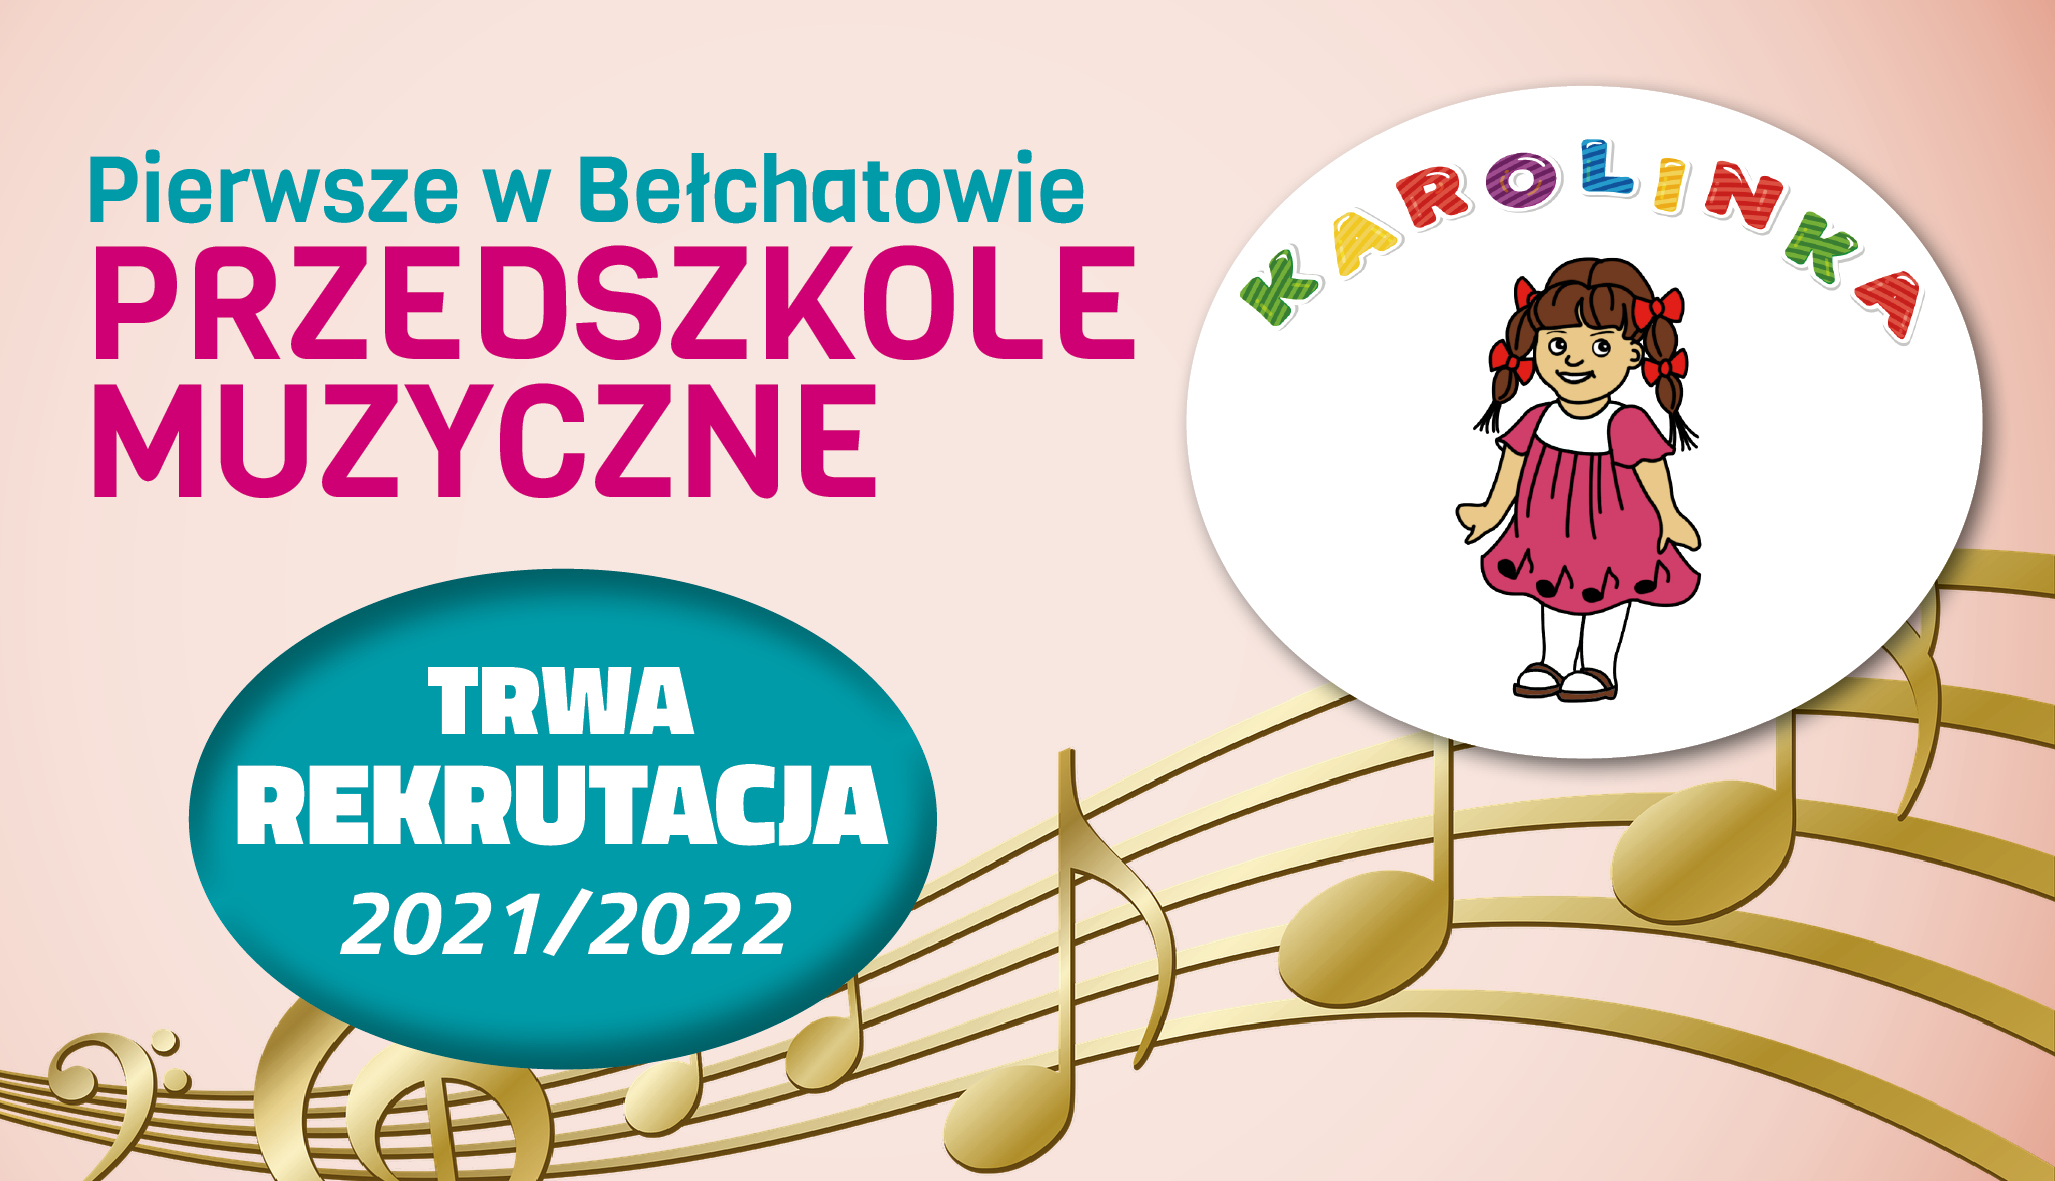 Pierwsze w Bełchatowie przedszkole muzyczne. "Karolinka" zaprasza do rekrutacji na nowy rok szkolny - Zdjęcie główne